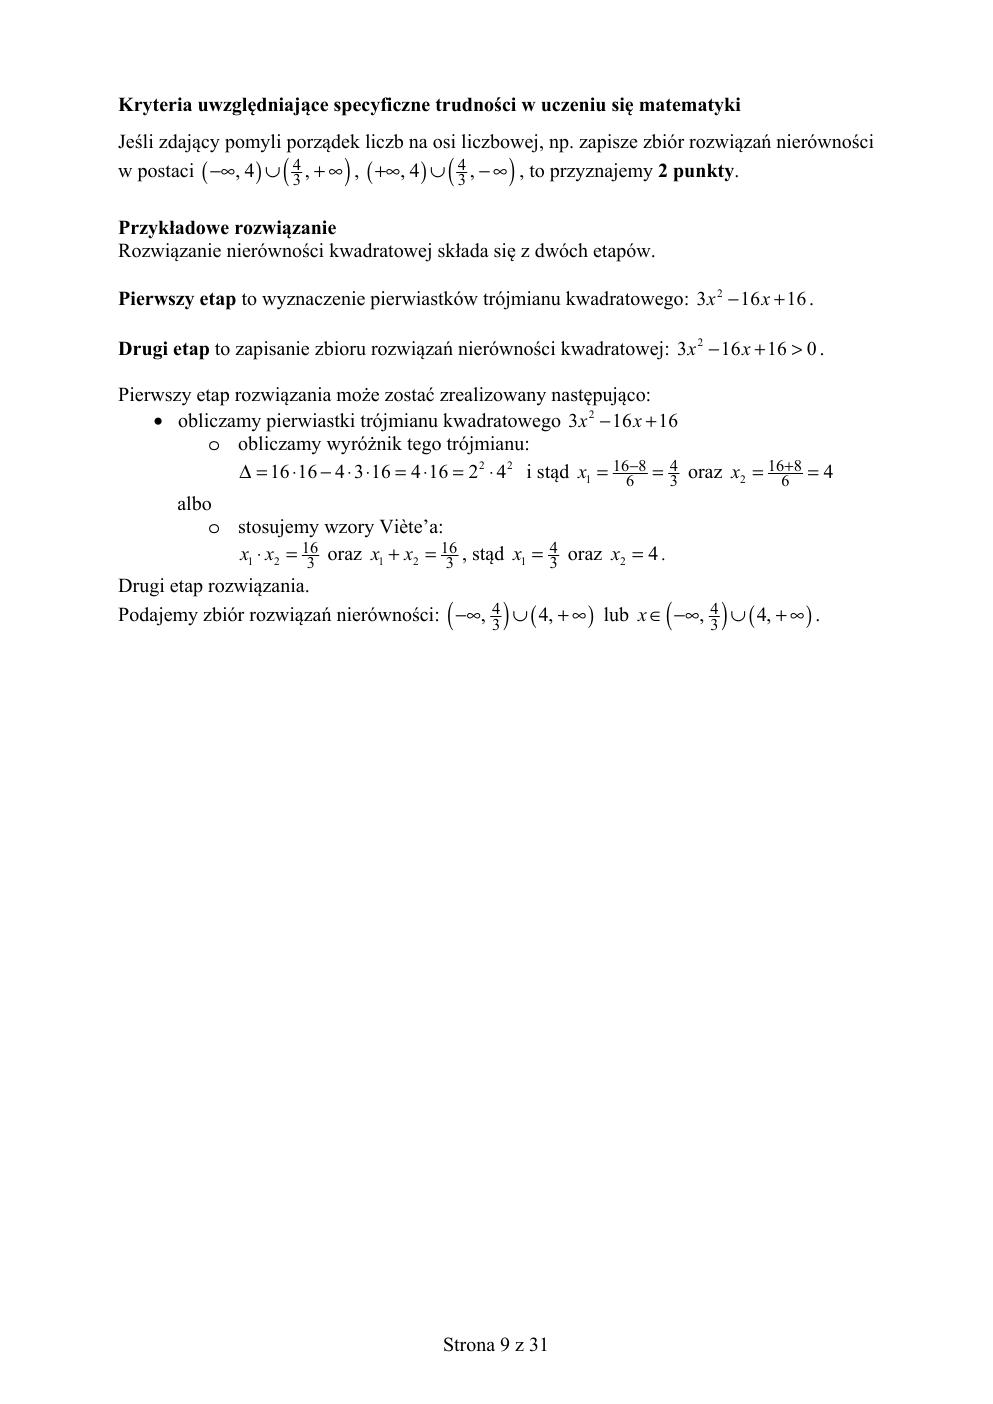 matematyka podstawowy - matura 2019 - odpowiedzi-09